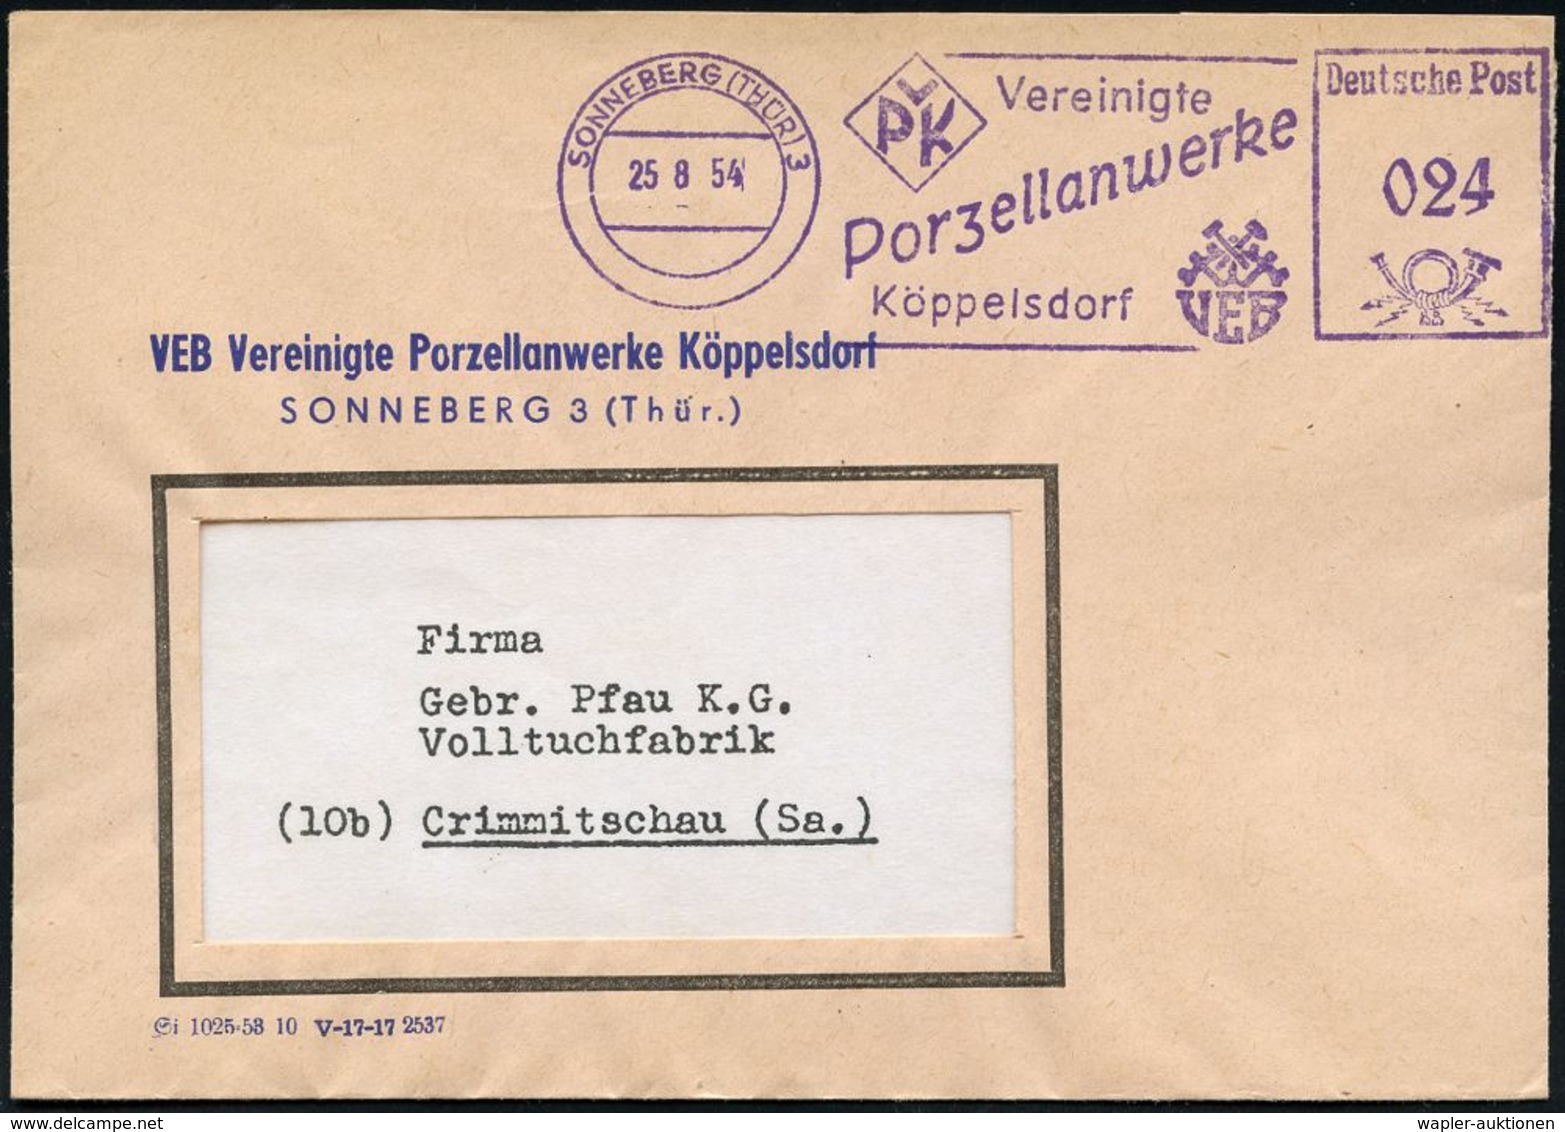 KERAMIK / PORZELLAN / MANUFAKTUREN : SONNEBERG (THÜR) 3/ VPK Vereinigte/ Porzellanwerke/ Köppelsdorf 1954 (25.8.) L I L  - Porzellan